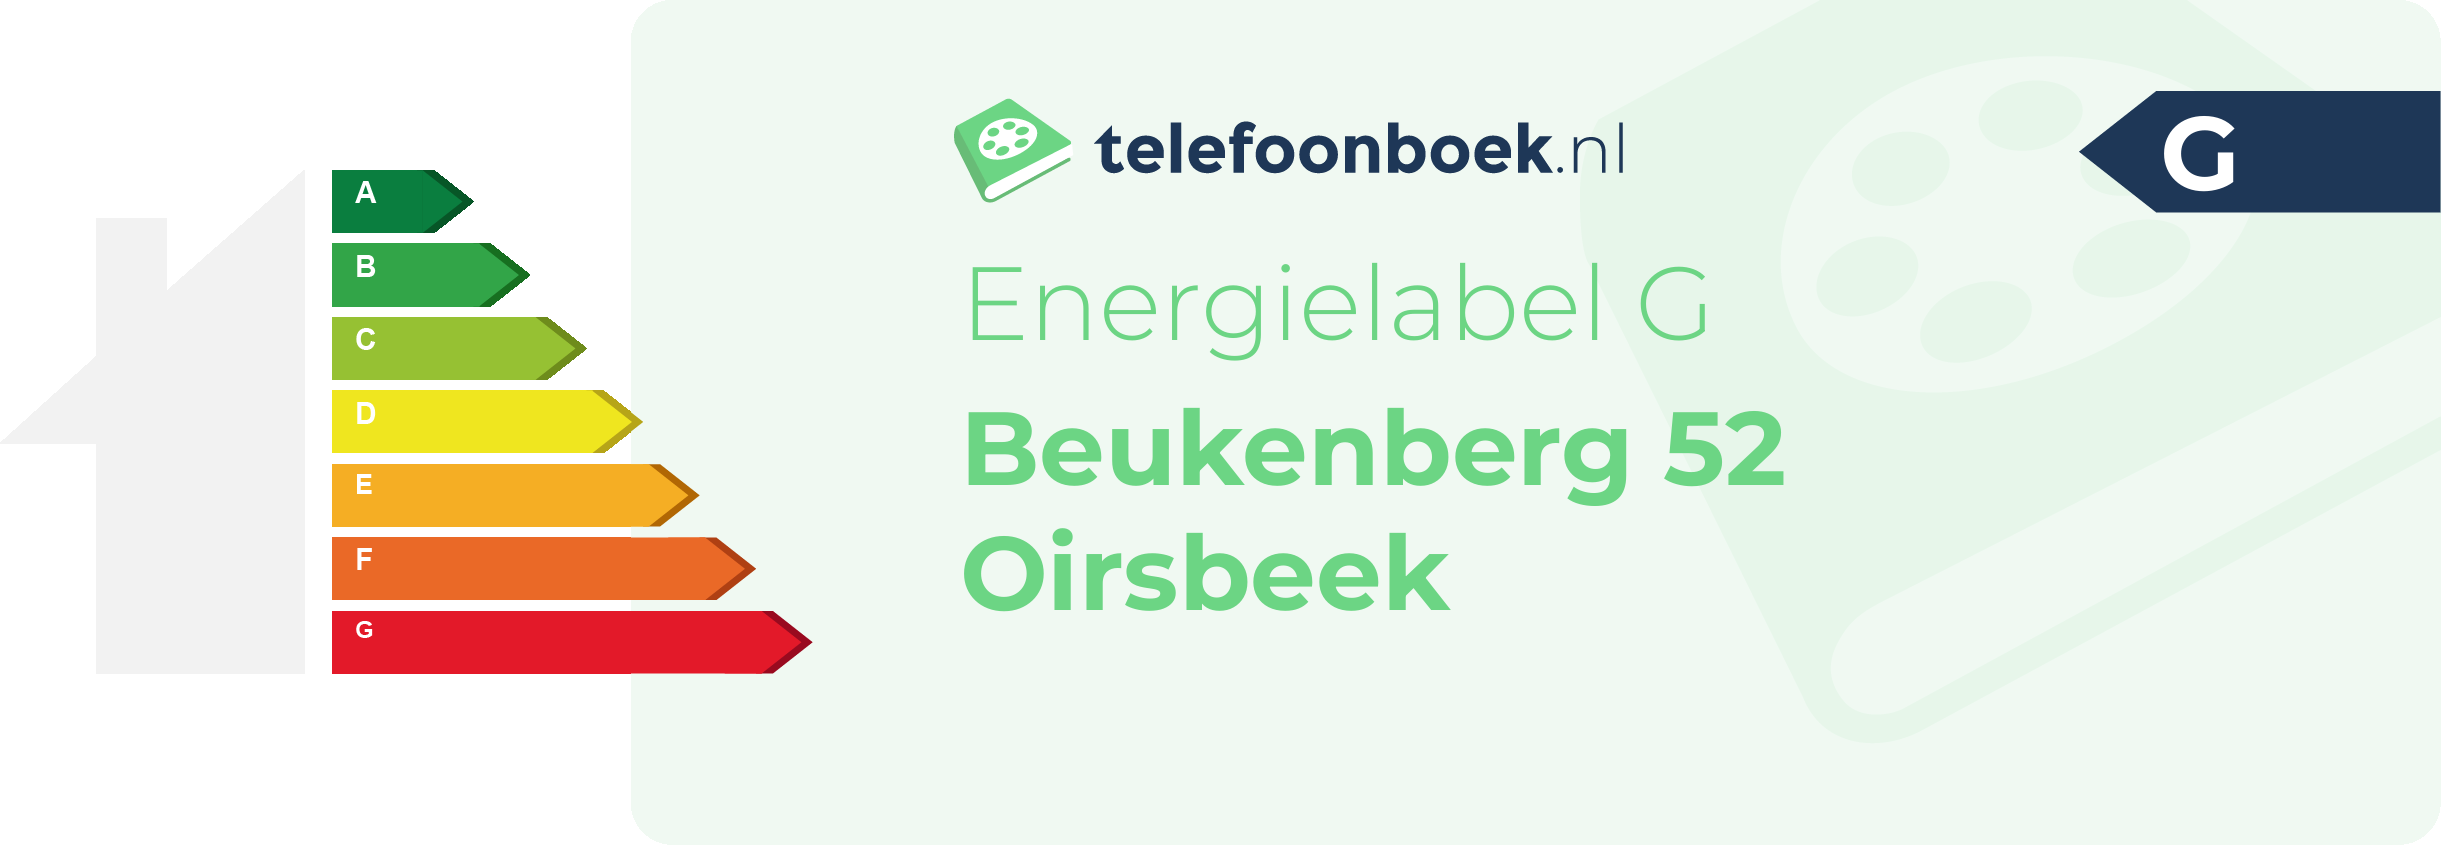 Energielabel Beukenberg 52 Oirsbeek